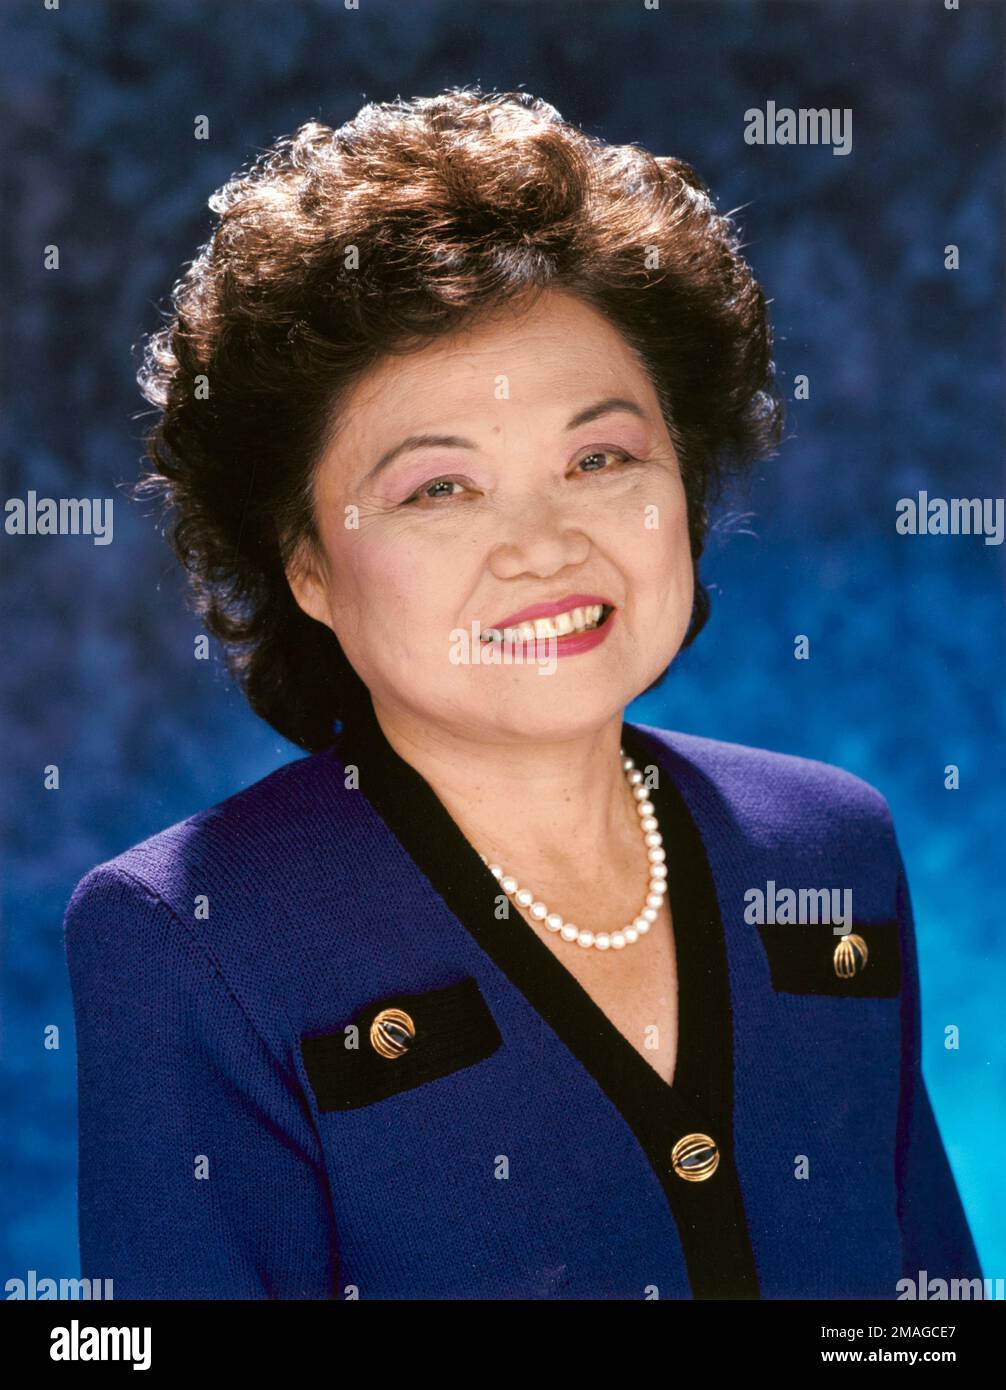 Patsy Mink. Portrait des hawaiianischen Anwalts und Politikers Patsy Matsu Mink (geborene Takemoto; 1927-2002), c. 1994. Mink war die erste farbige Frau, die zum Kongress gewählt wurde. Stockfoto